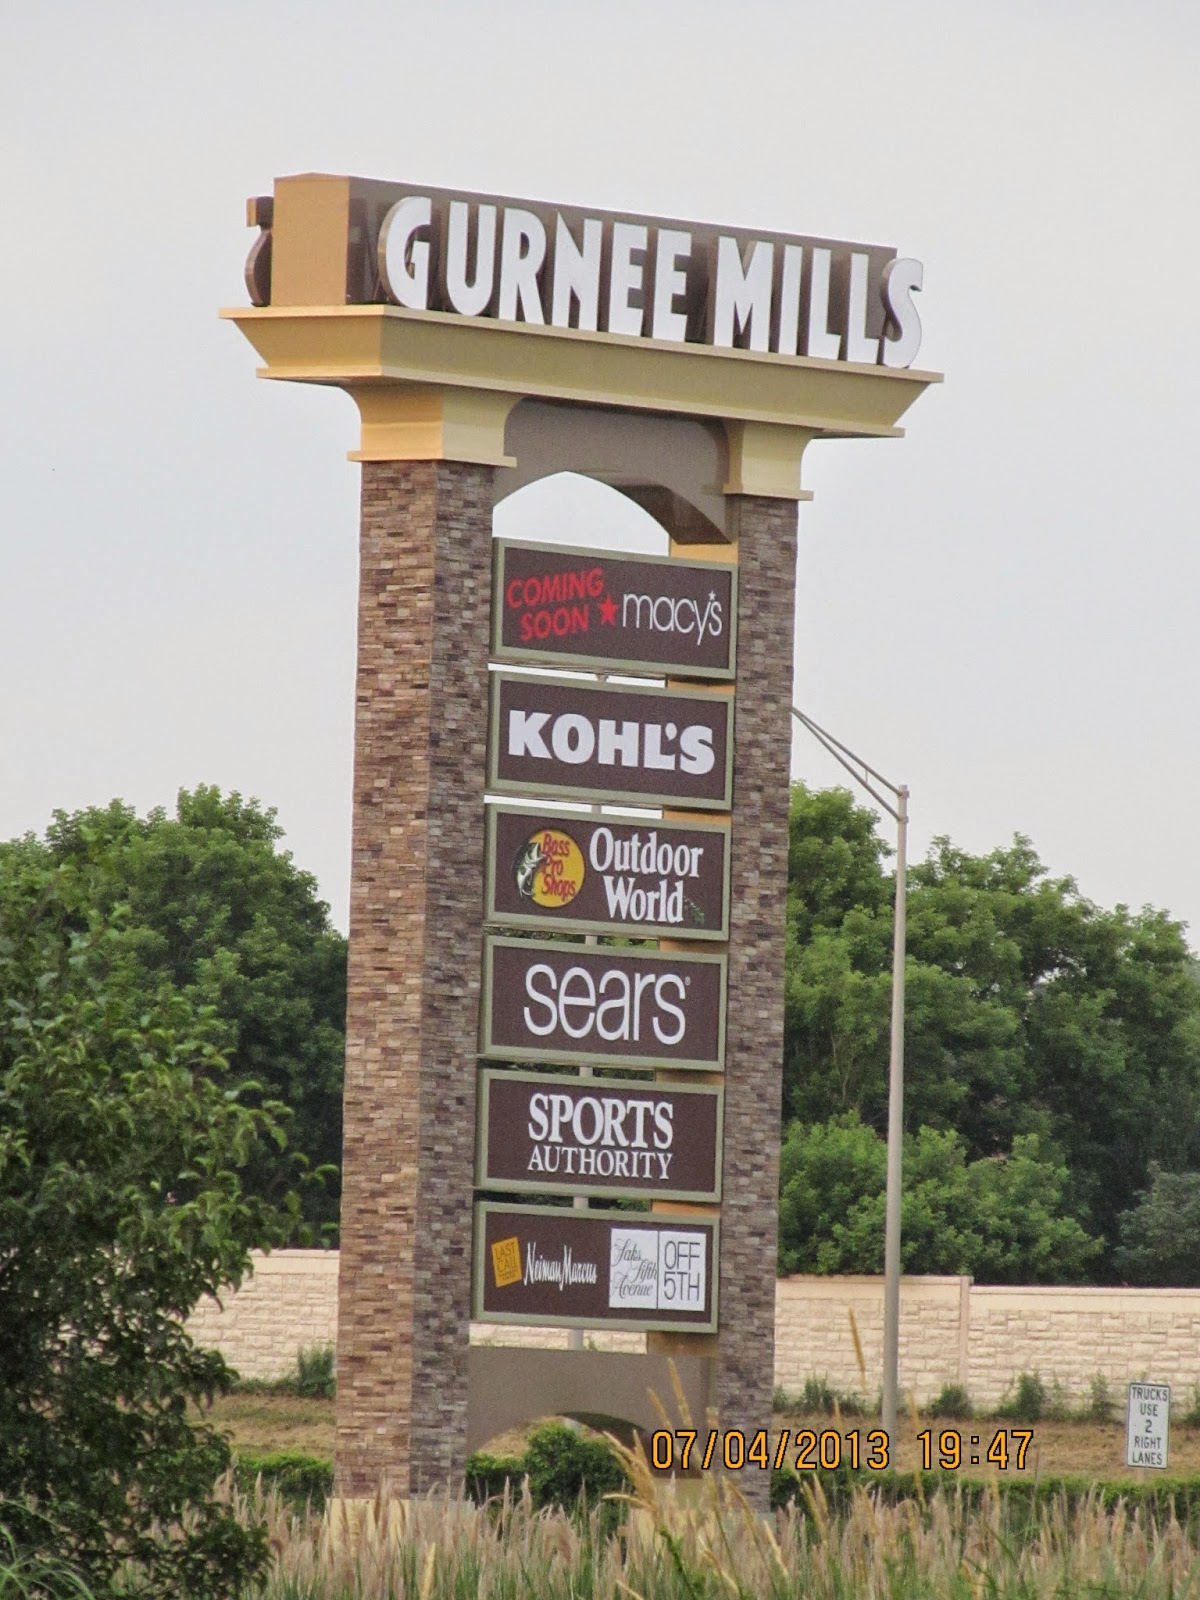 Mall Map of Gurnee Mills®, a Simon Mall - Gurnee, IL